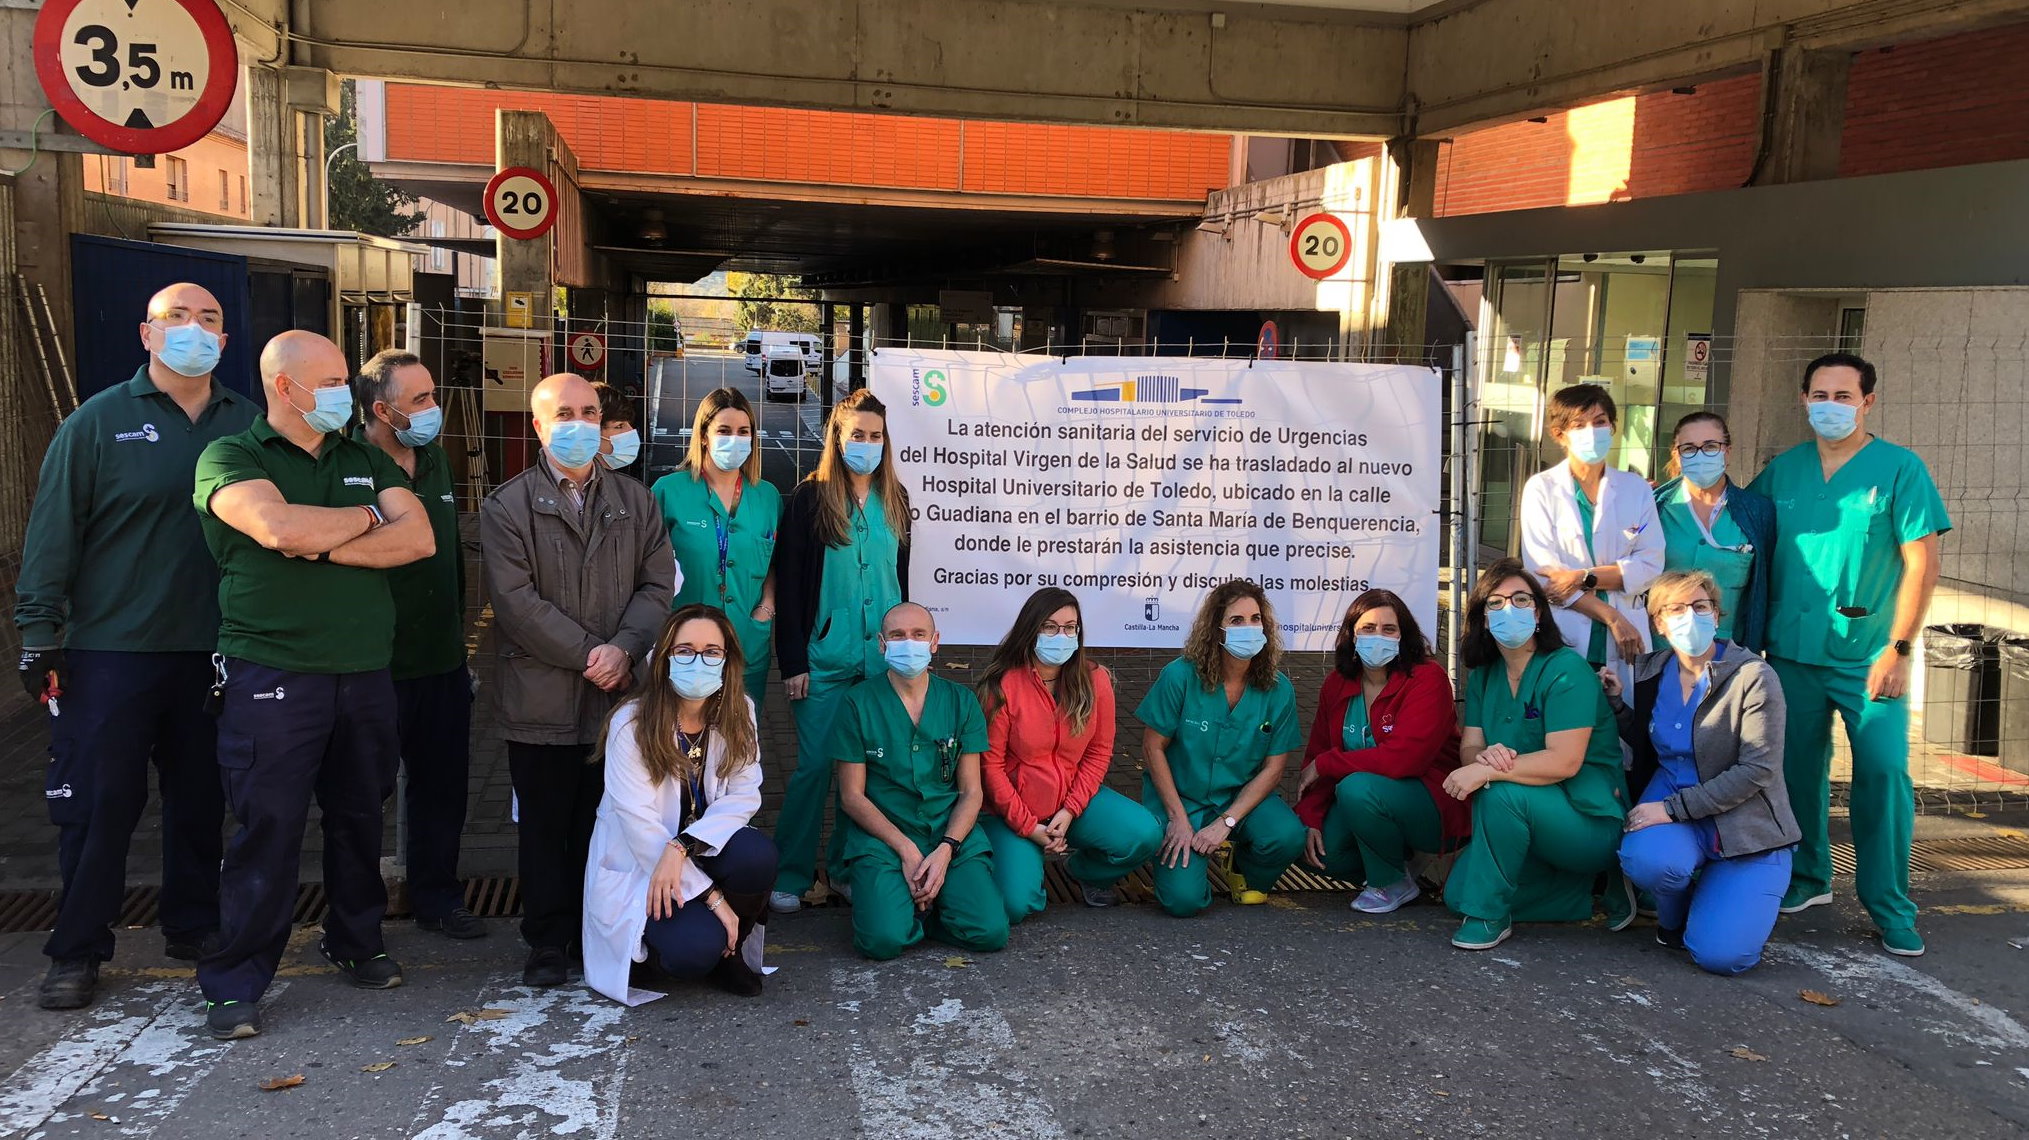 Algunos de los últimos trabajaddores del hospital Virgen de la Salud, en Toledo, que echaron el cierre a principios de diciembre en un pequeño acto improvisado muy emotivo...